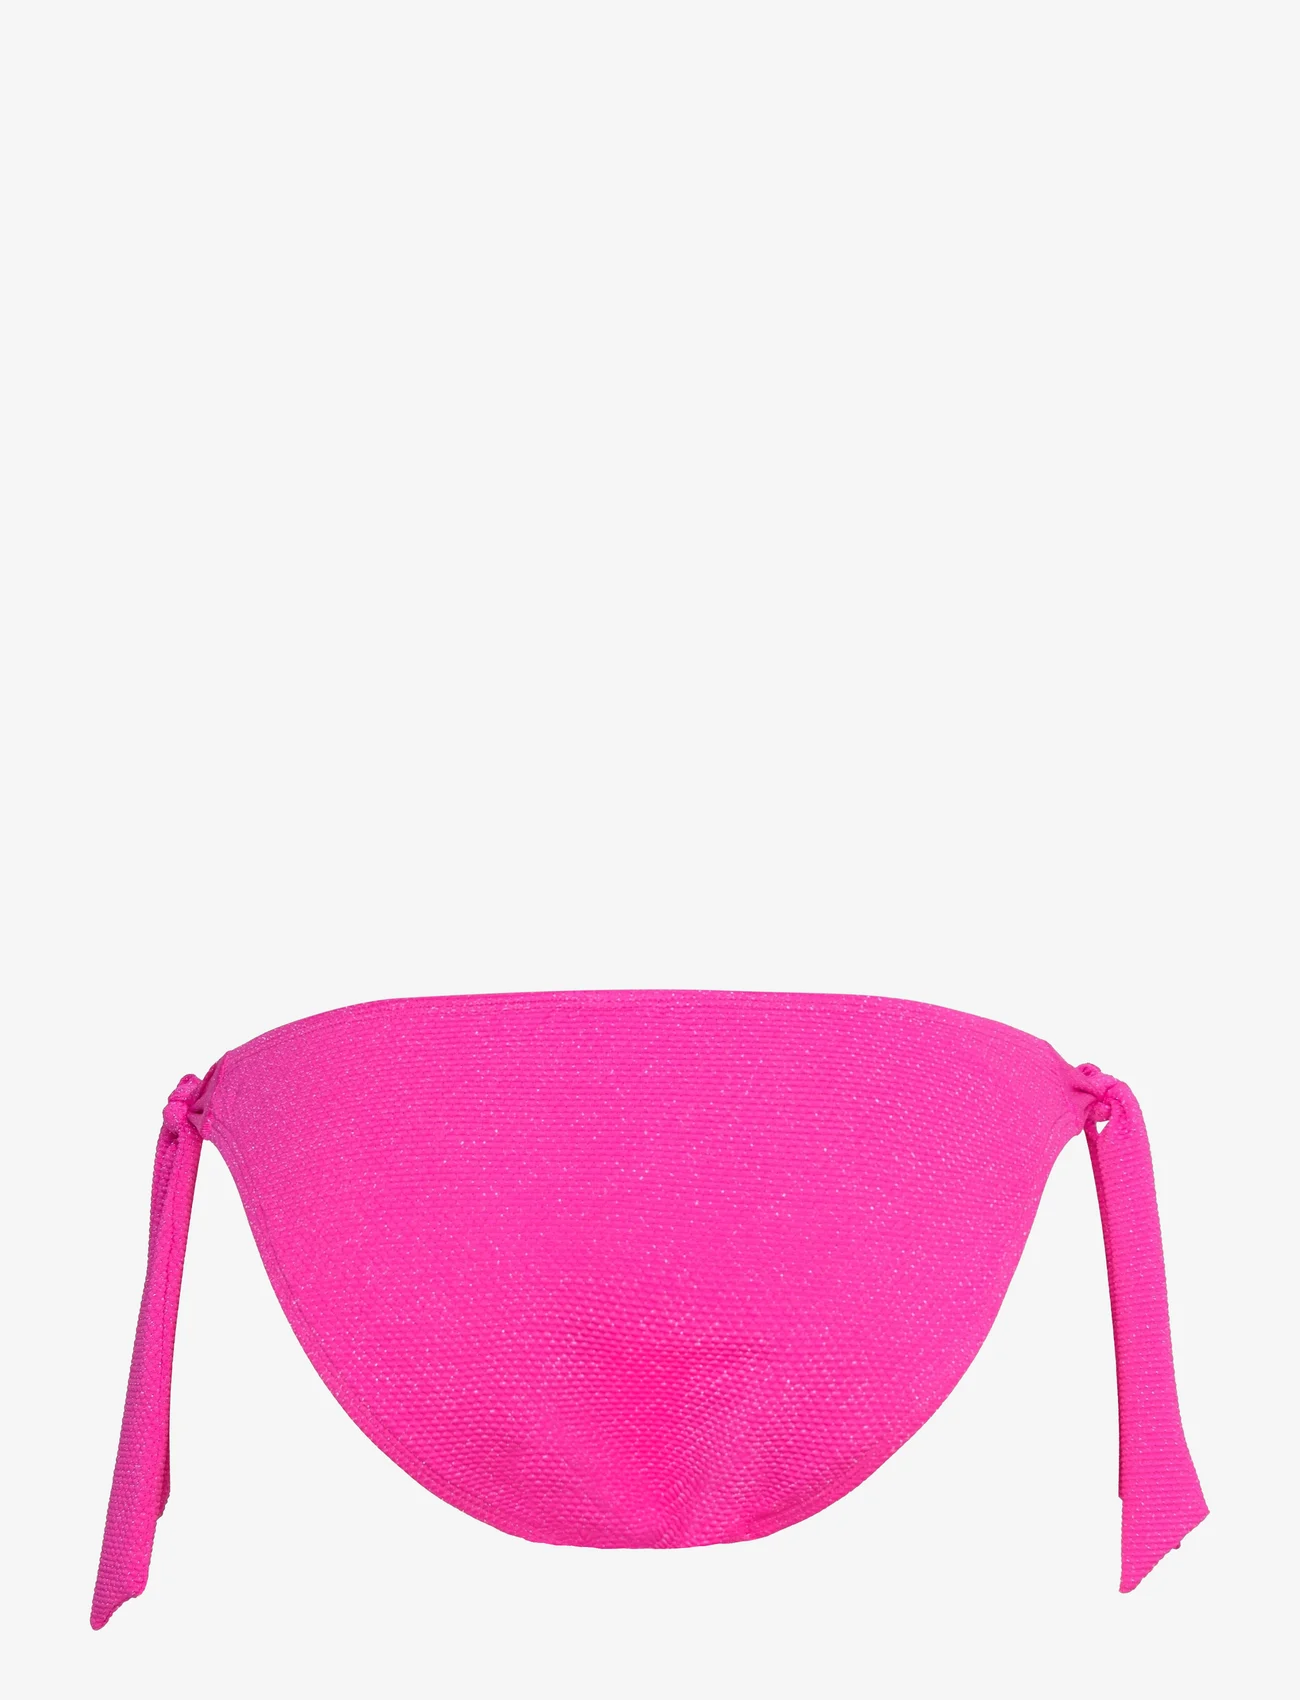 Hunkemöller - Scallop lurex rio t - side tie bikinis - hot pink - 1